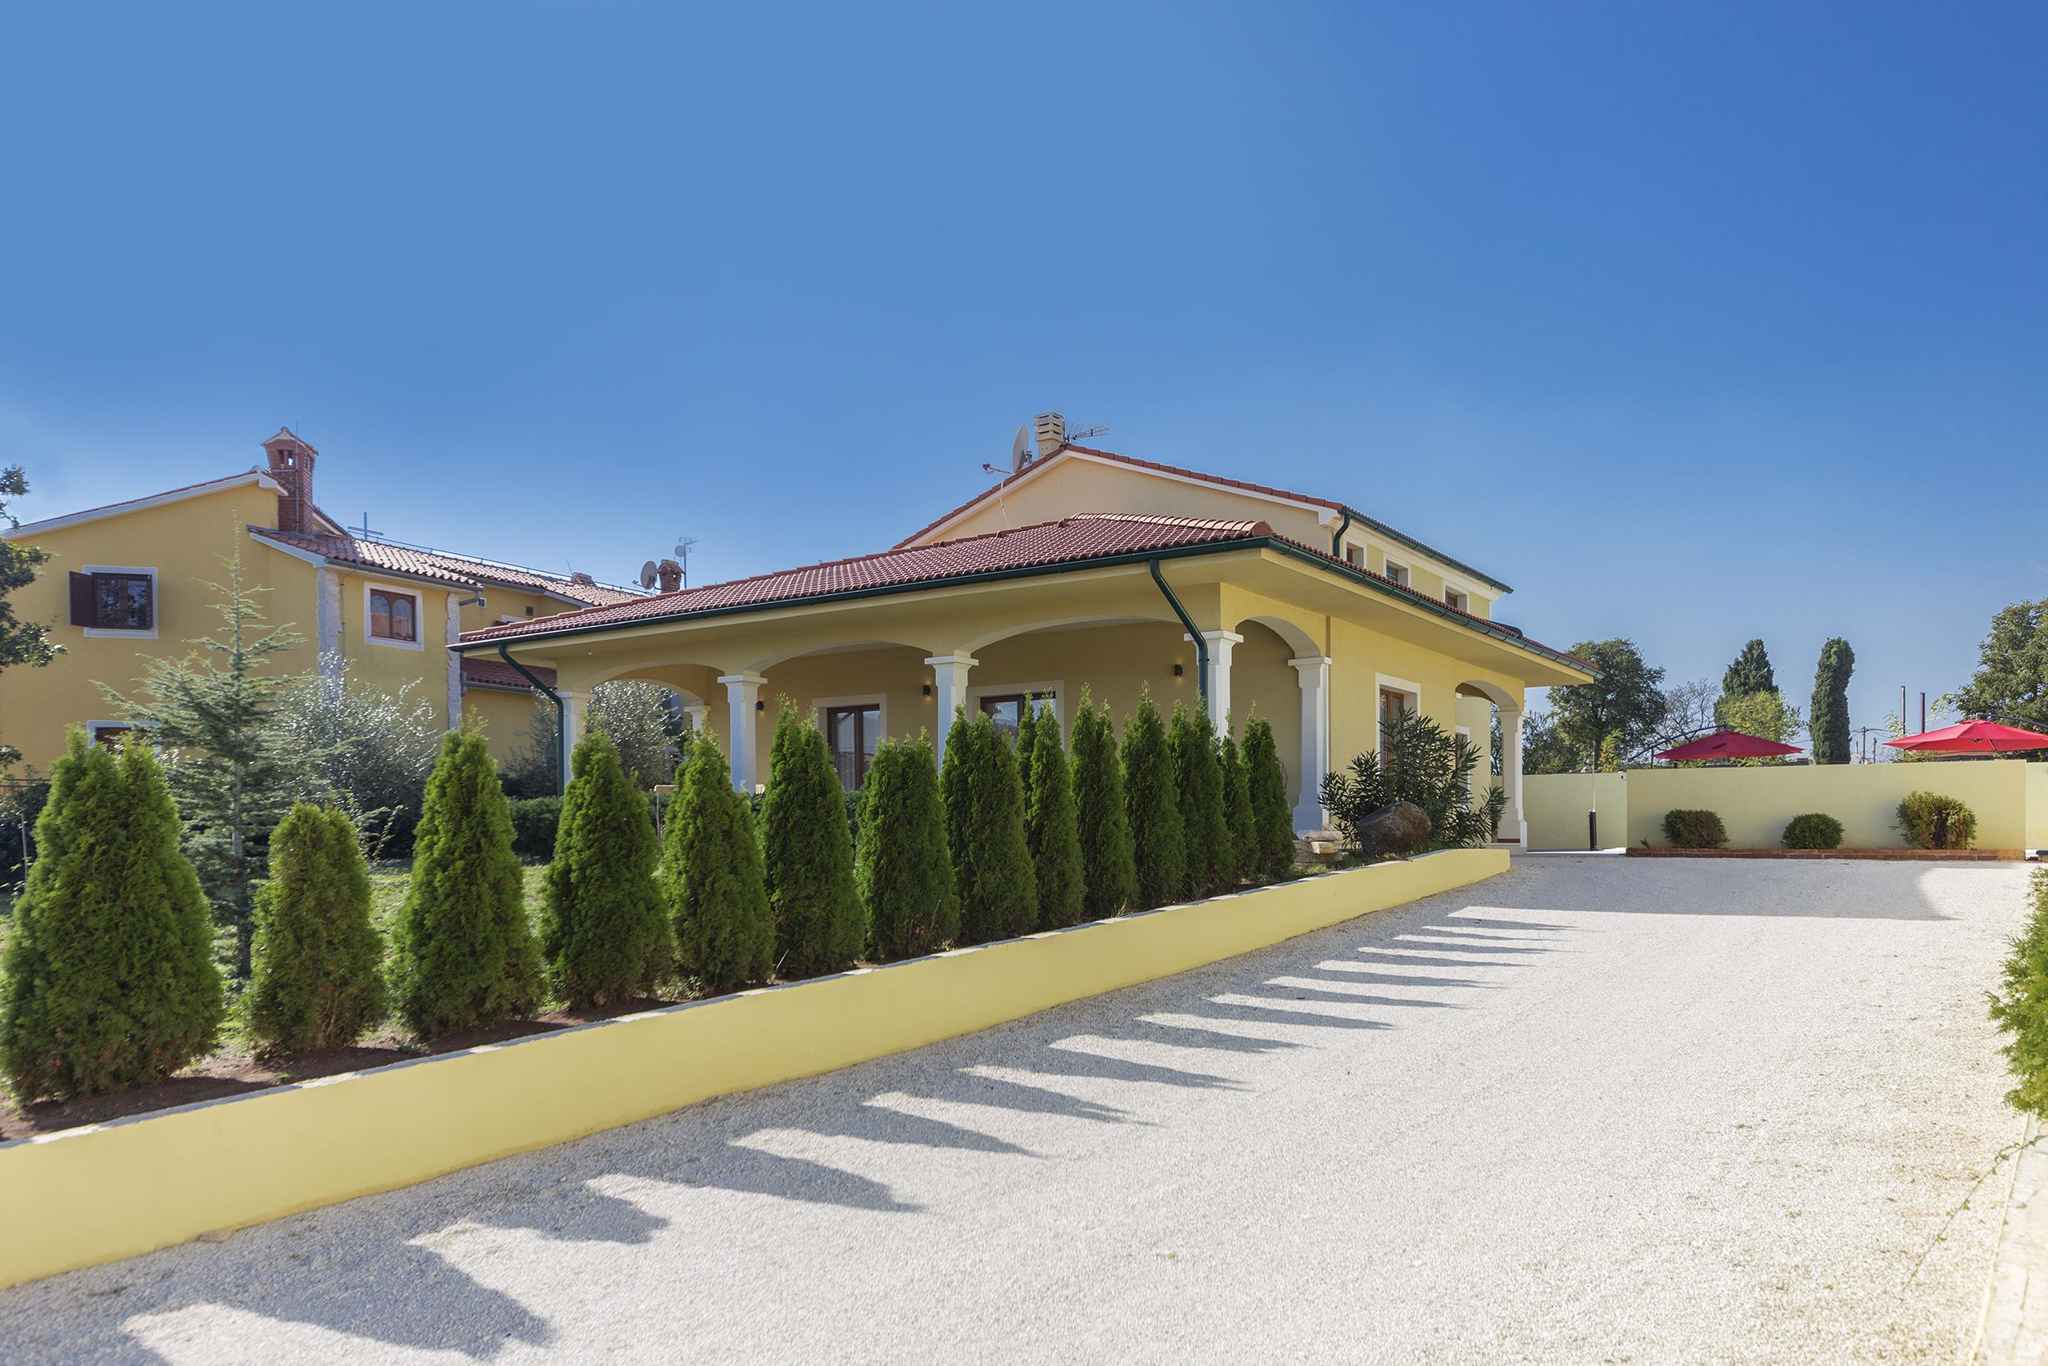 Villa mit Pool, Terrasse und Sommerküche Ferienhaus in Kroatien